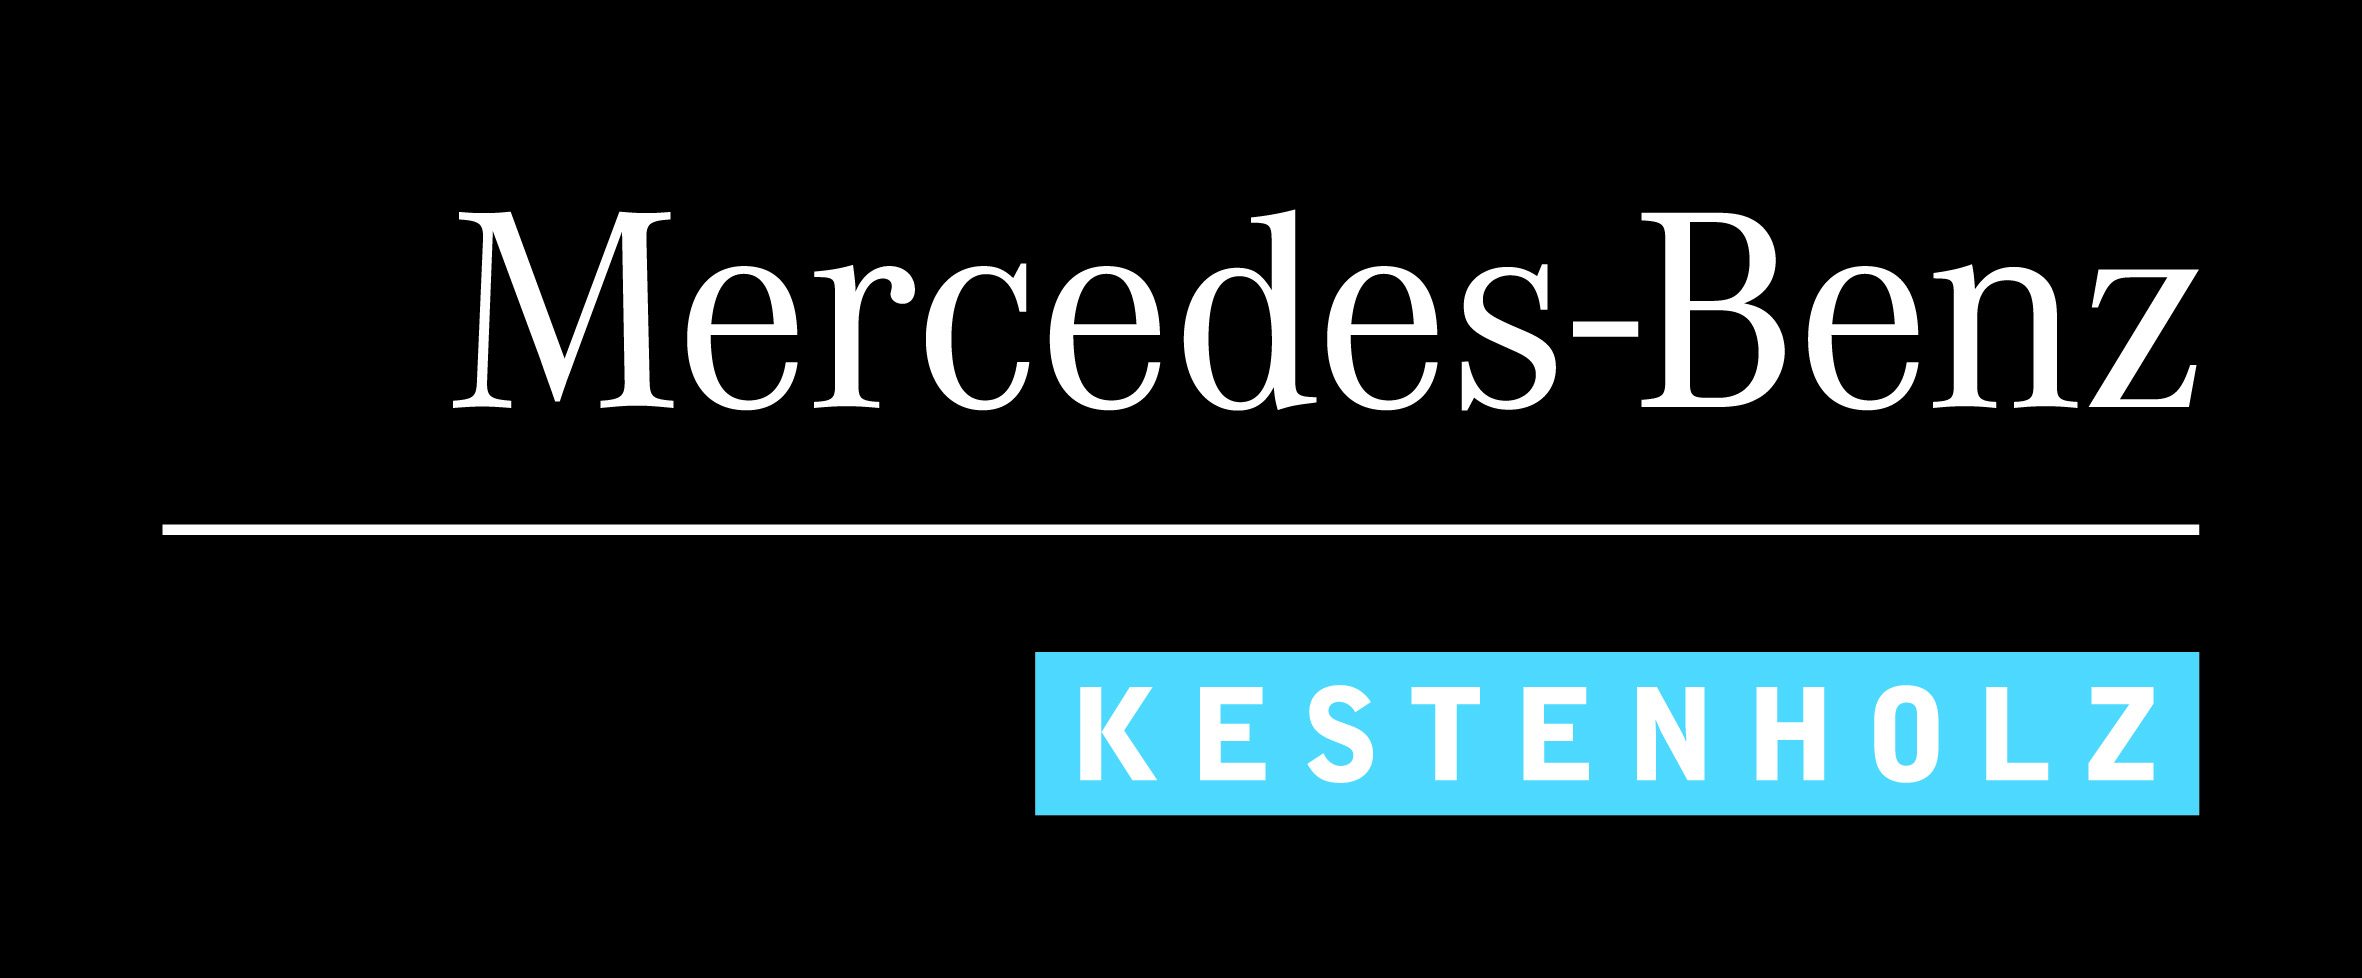 Mercedes Benz Kestenholz 100mm CMYK C Box negativ